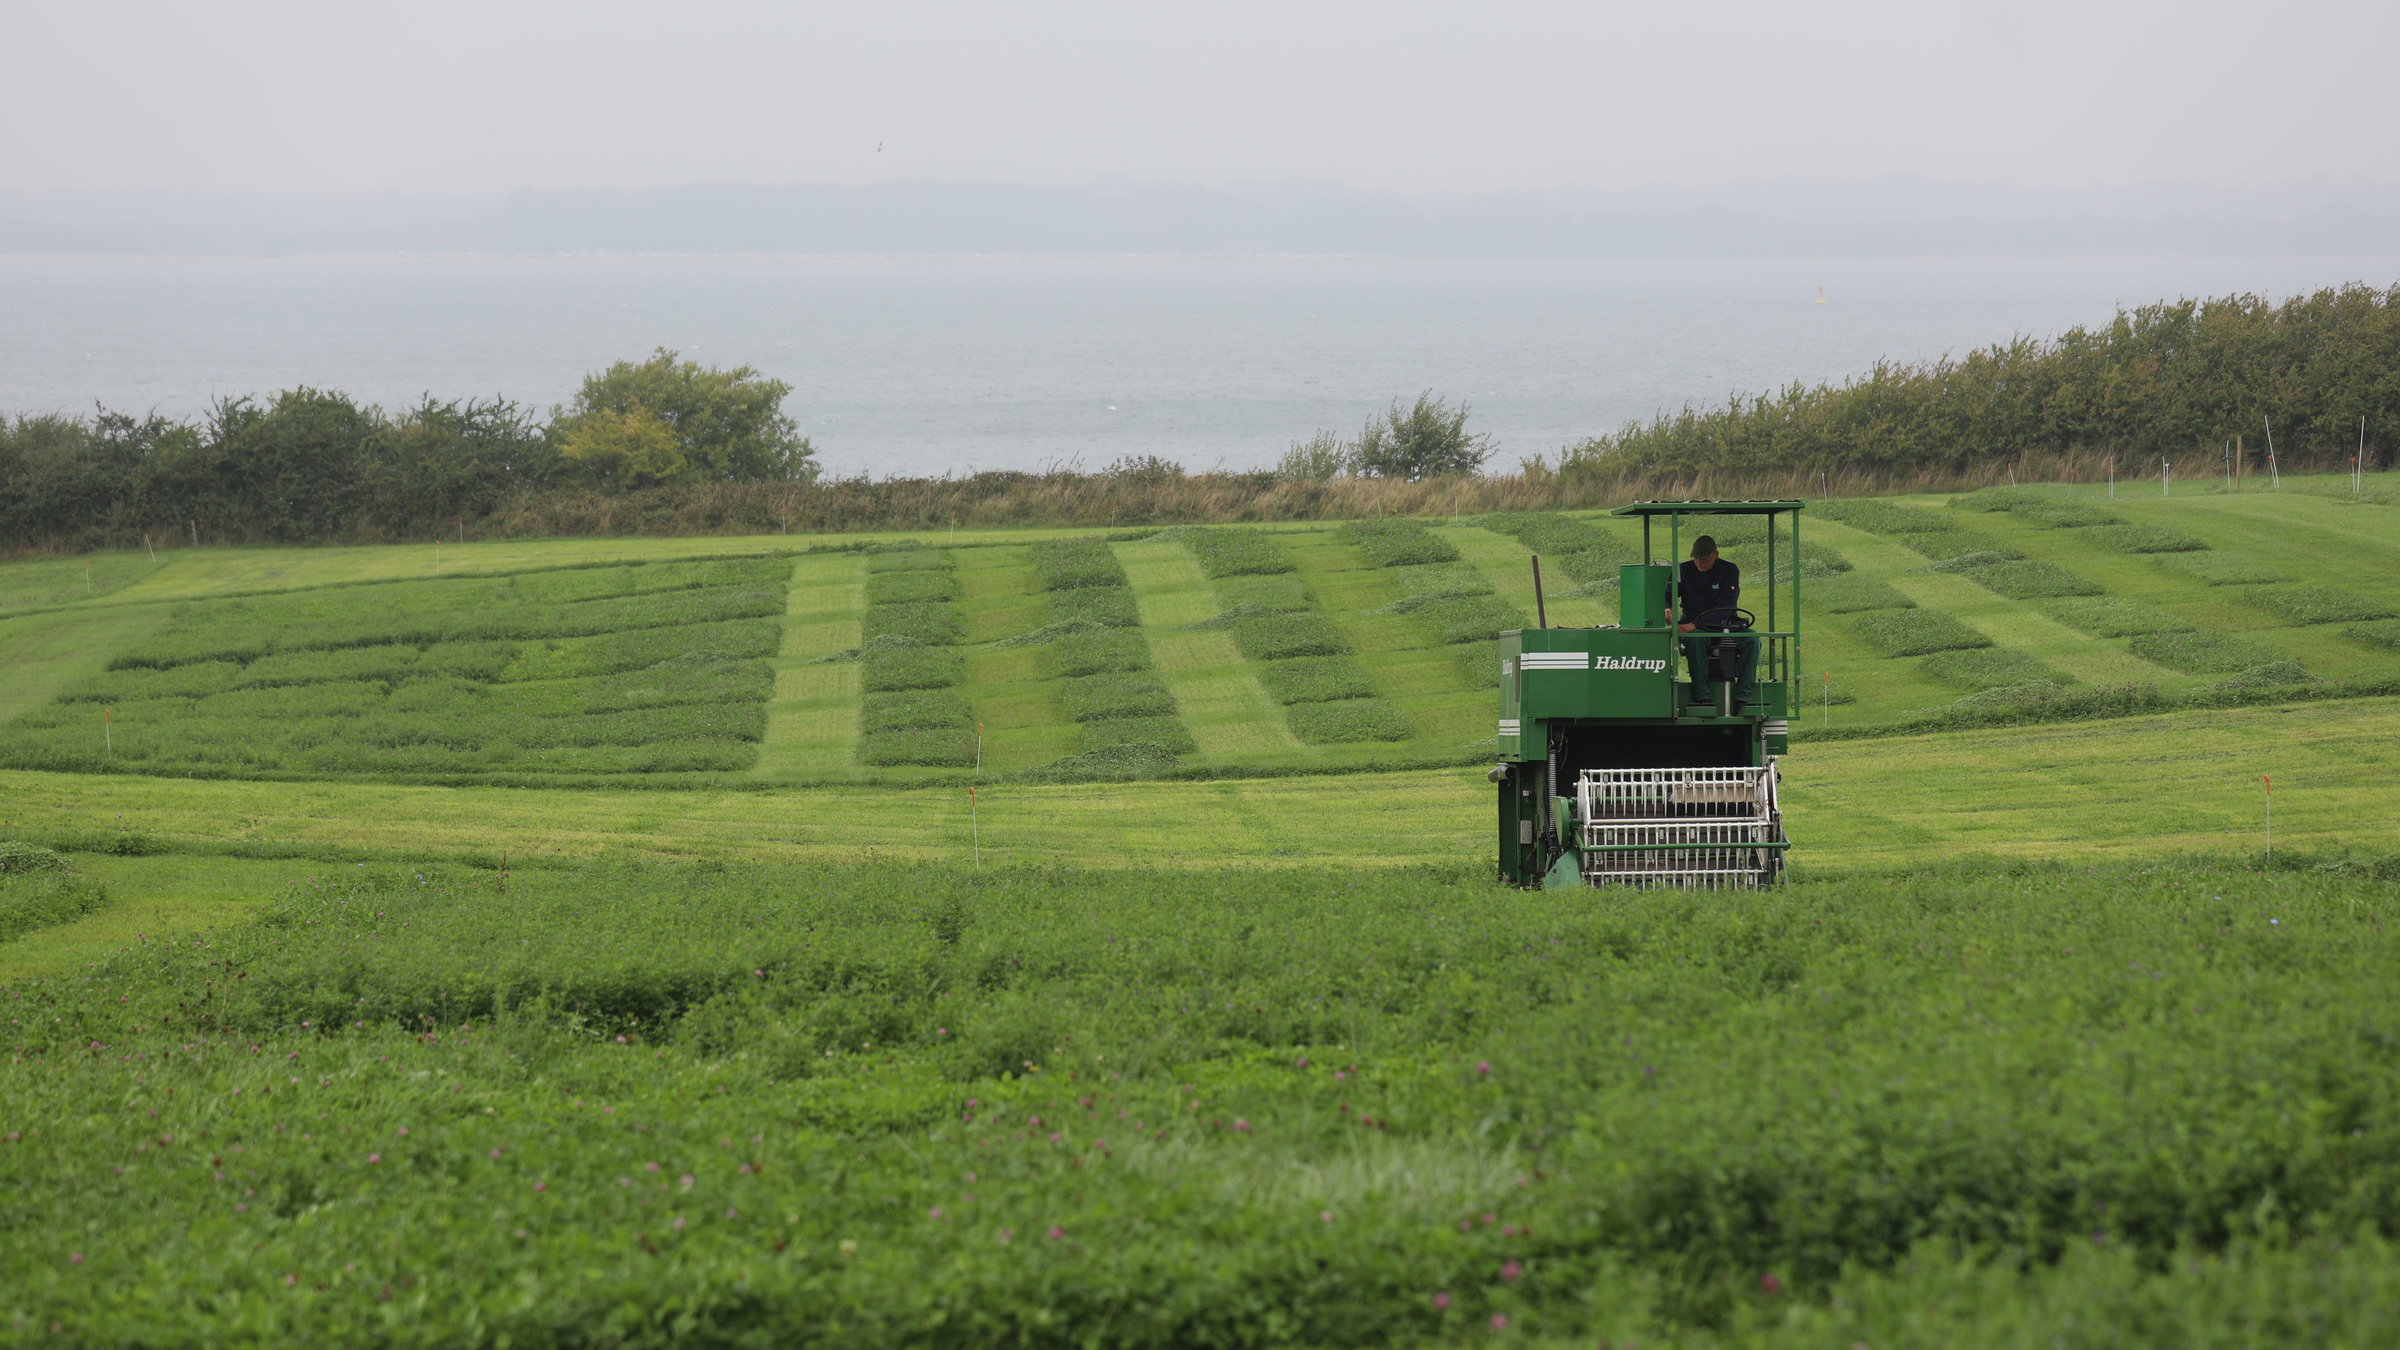 "planet e.: Europas grüne Felder - Wohin steuert die Agrarpolitik?": Traktor beim Ernten auf einem grünen Feld.